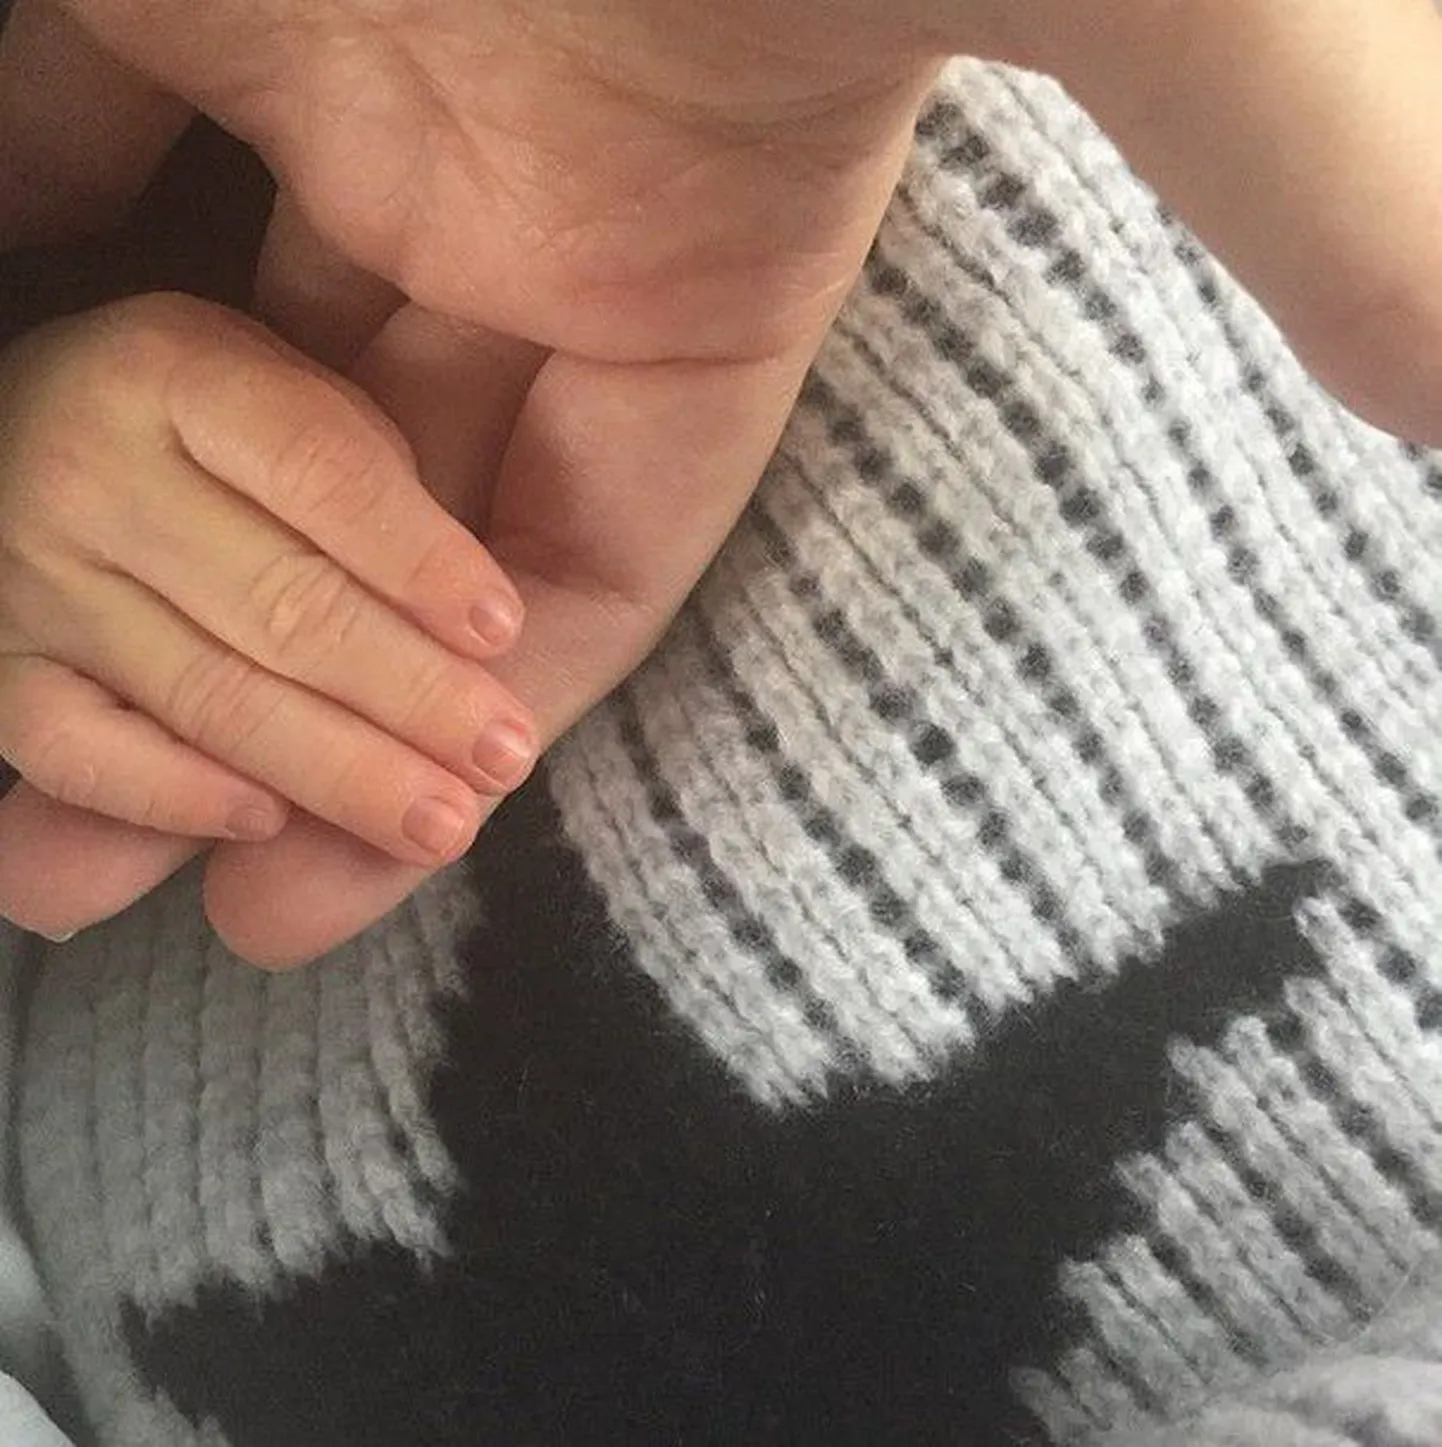 Kourtney Kardashiani kolmas laps sai nimeks Reign Aston Disick